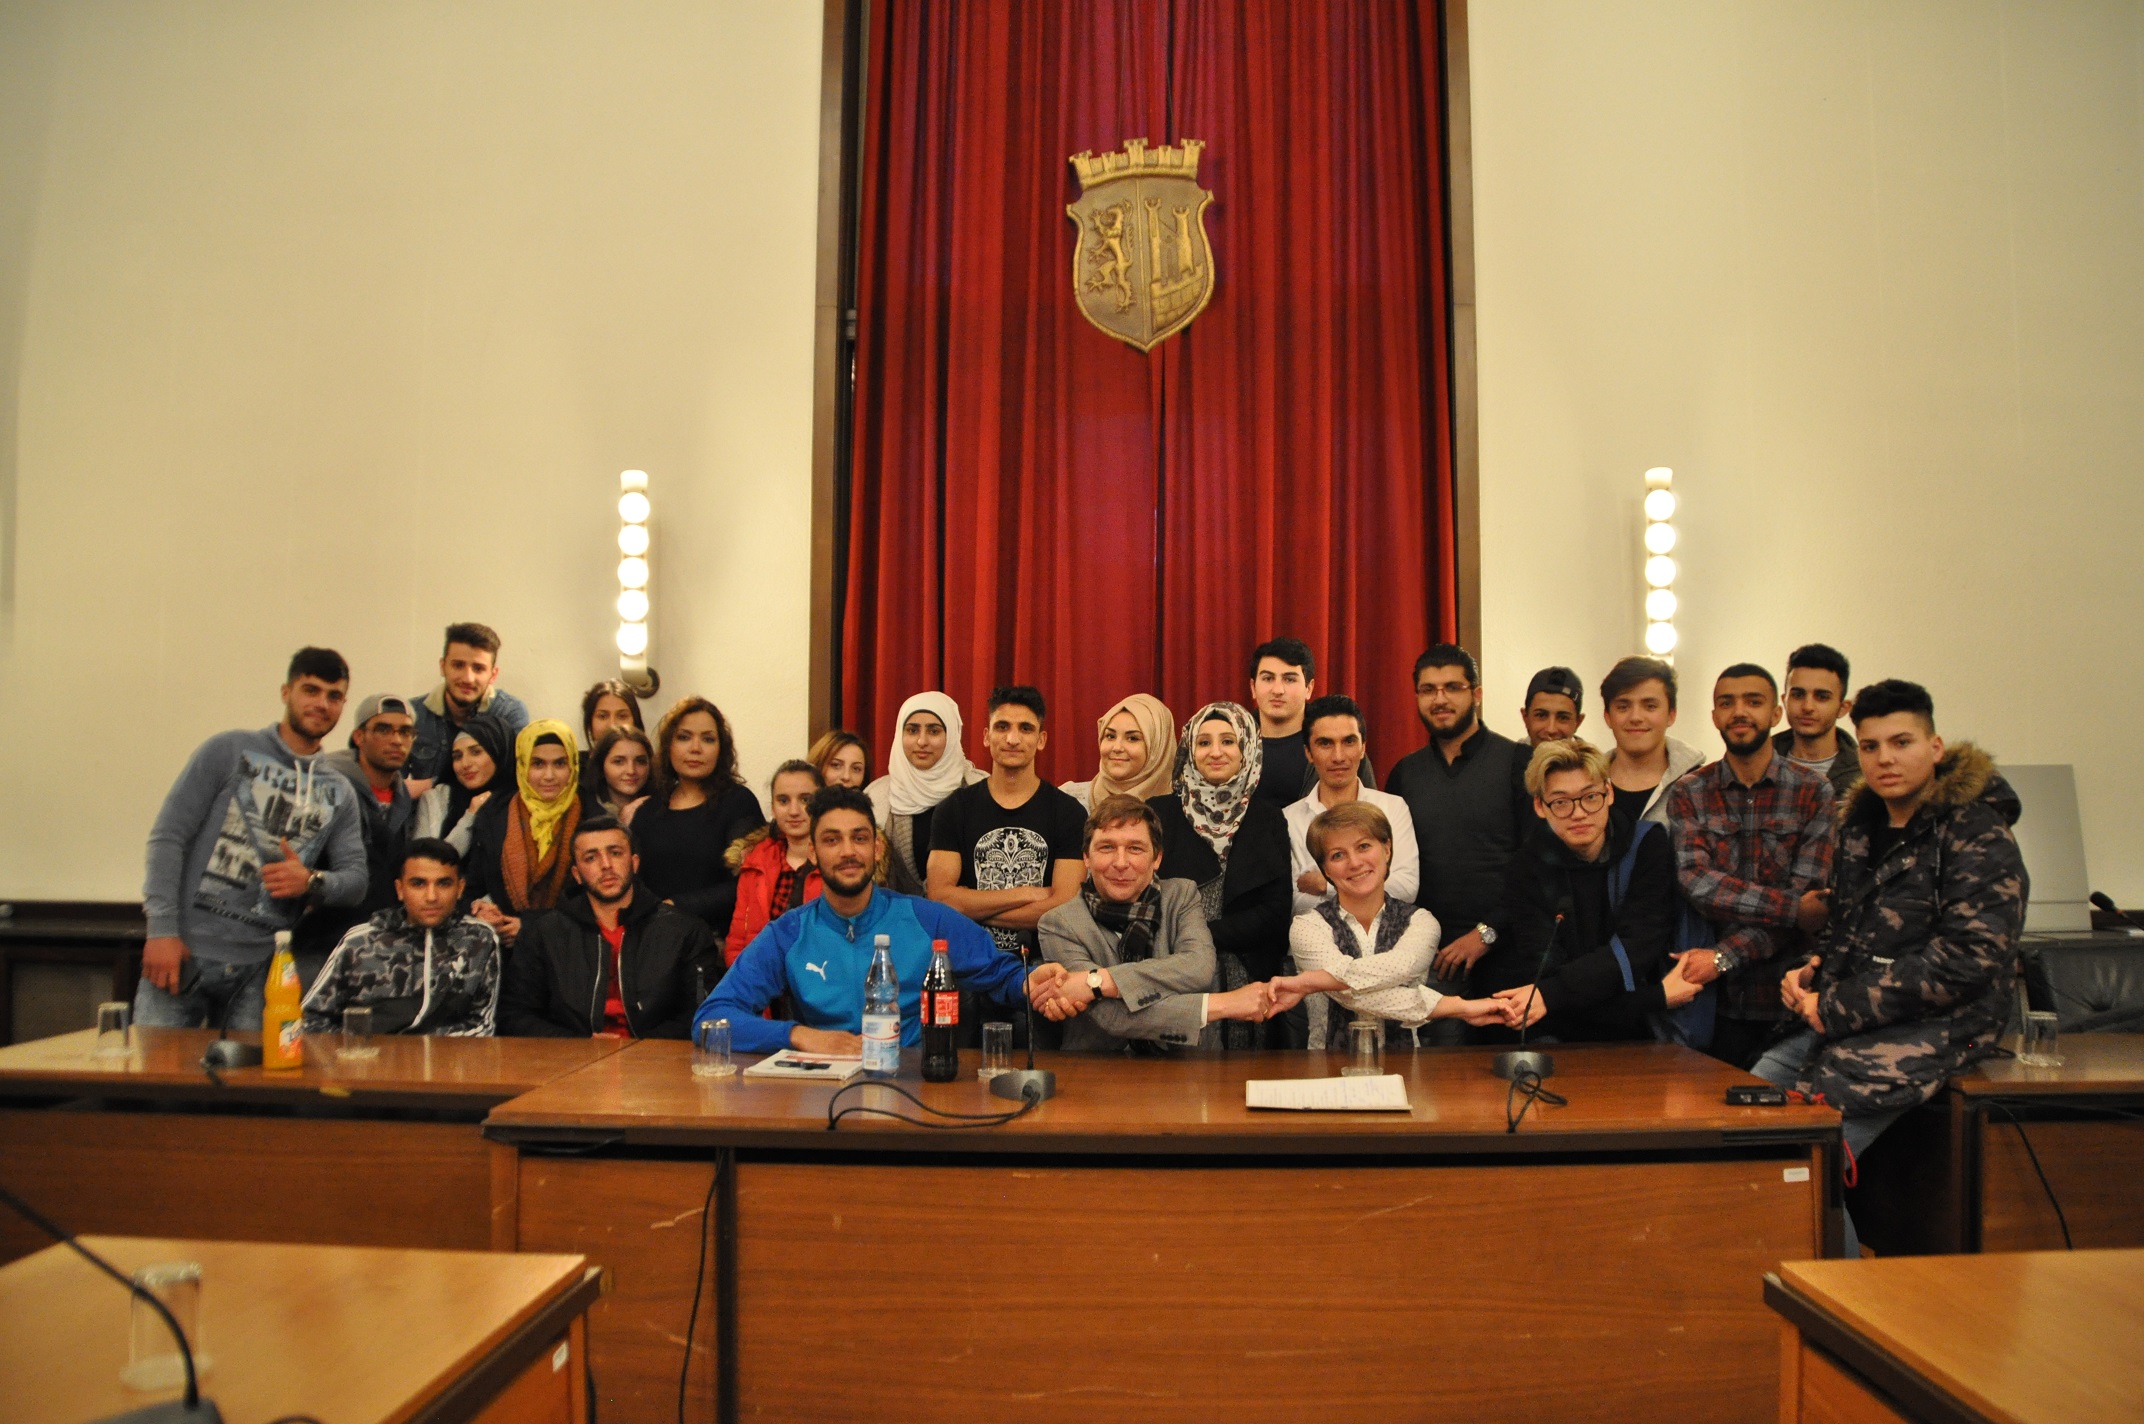 Bürgermeister empfing Schülerinnen und Schüler der Internationalen Förderklasse des Berufskollegs Jülich